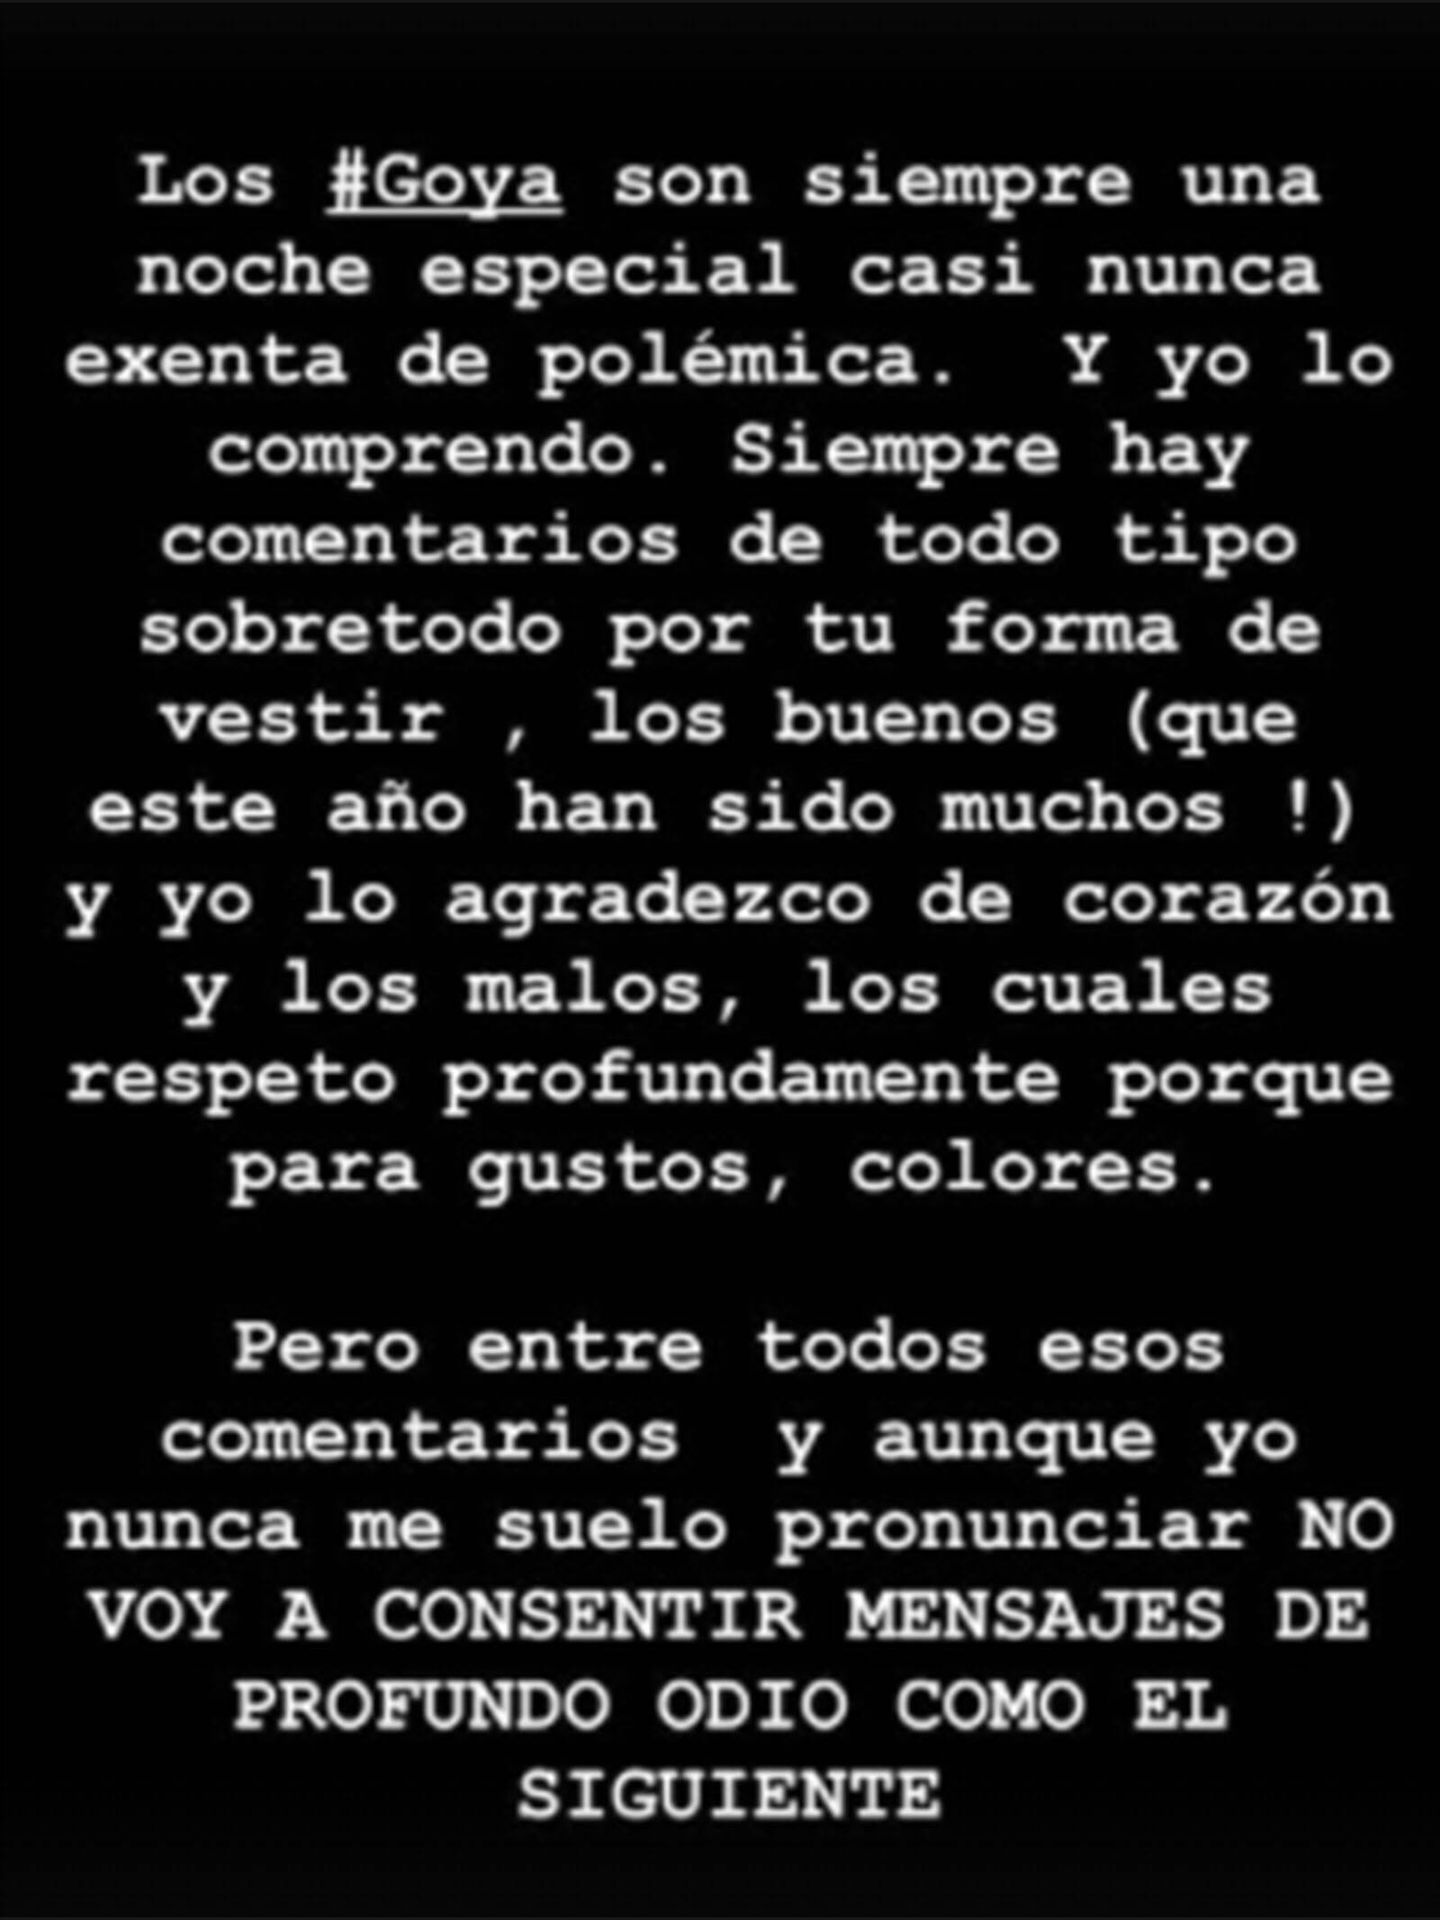 El mensaje que ha publicado en sus redes sociales Eduardo Casanova. (Instagram/@eduardocasanova)